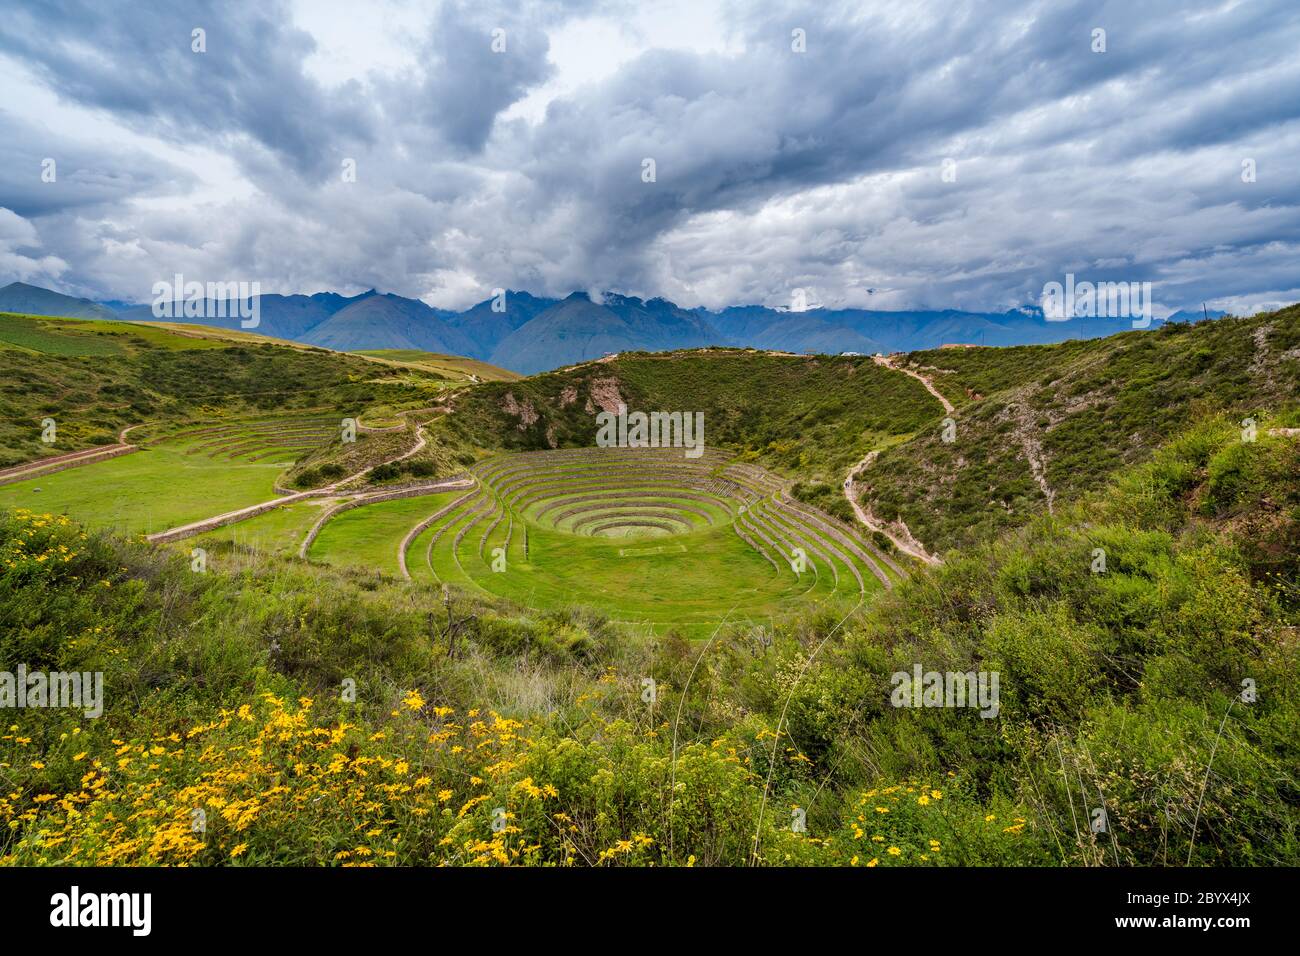 Terrasses circulaires Inca de Moray, site archéologique de la Vallée Sacrée des Incas, région de Cusco, Pérou, Amérique du Sud. Banque D'Images